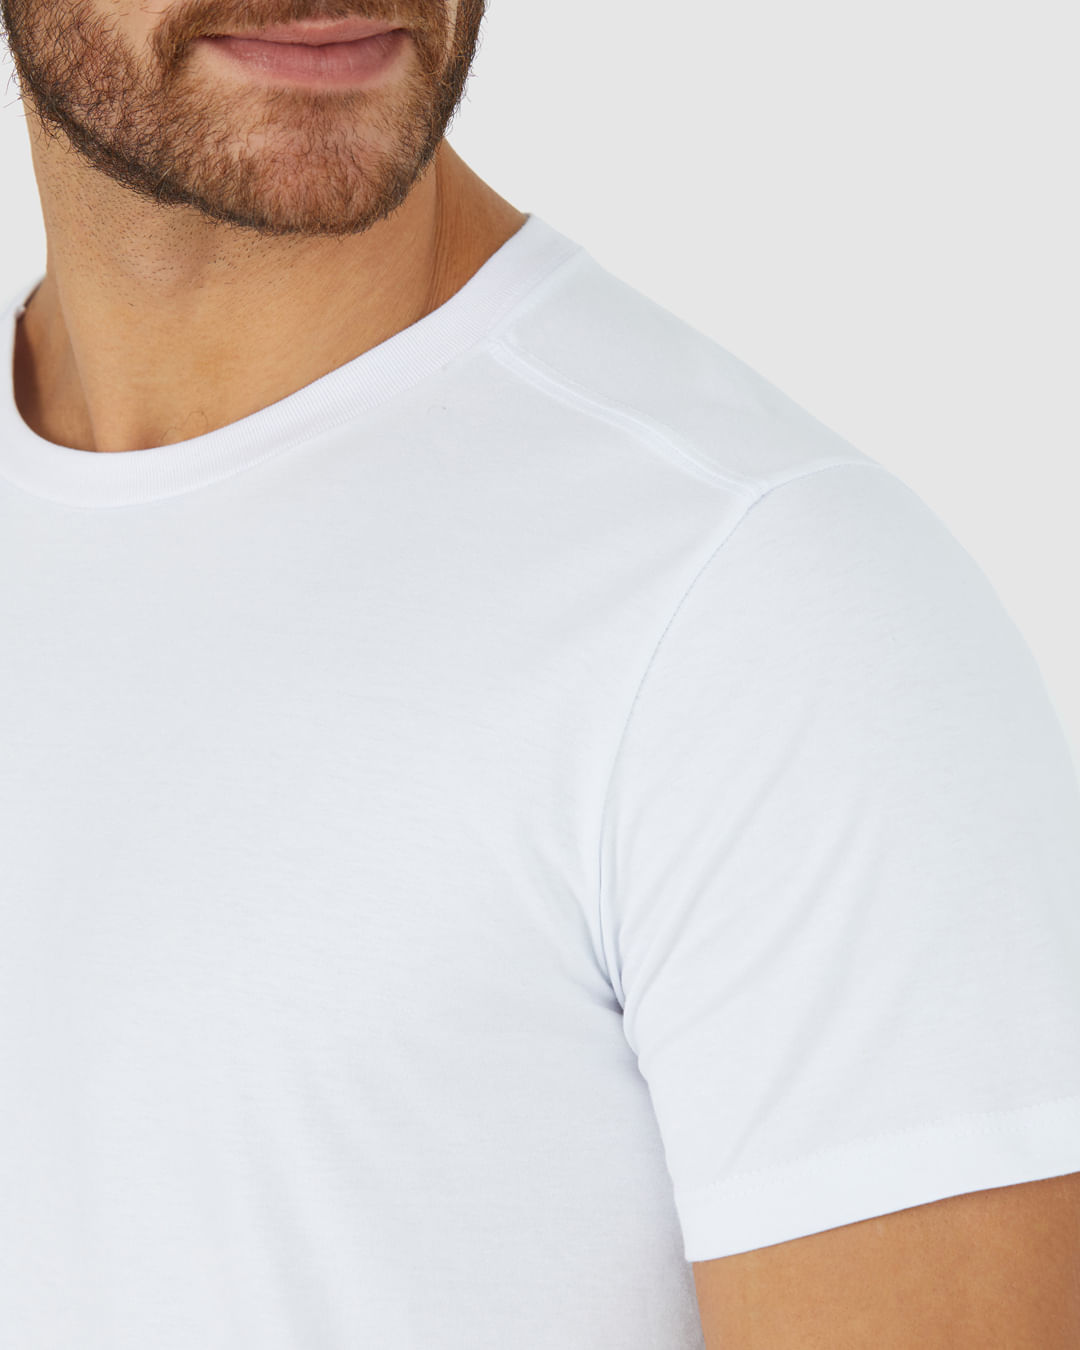 Camiseta Básica Masculina Abertura Lateral Em Algodão Pima